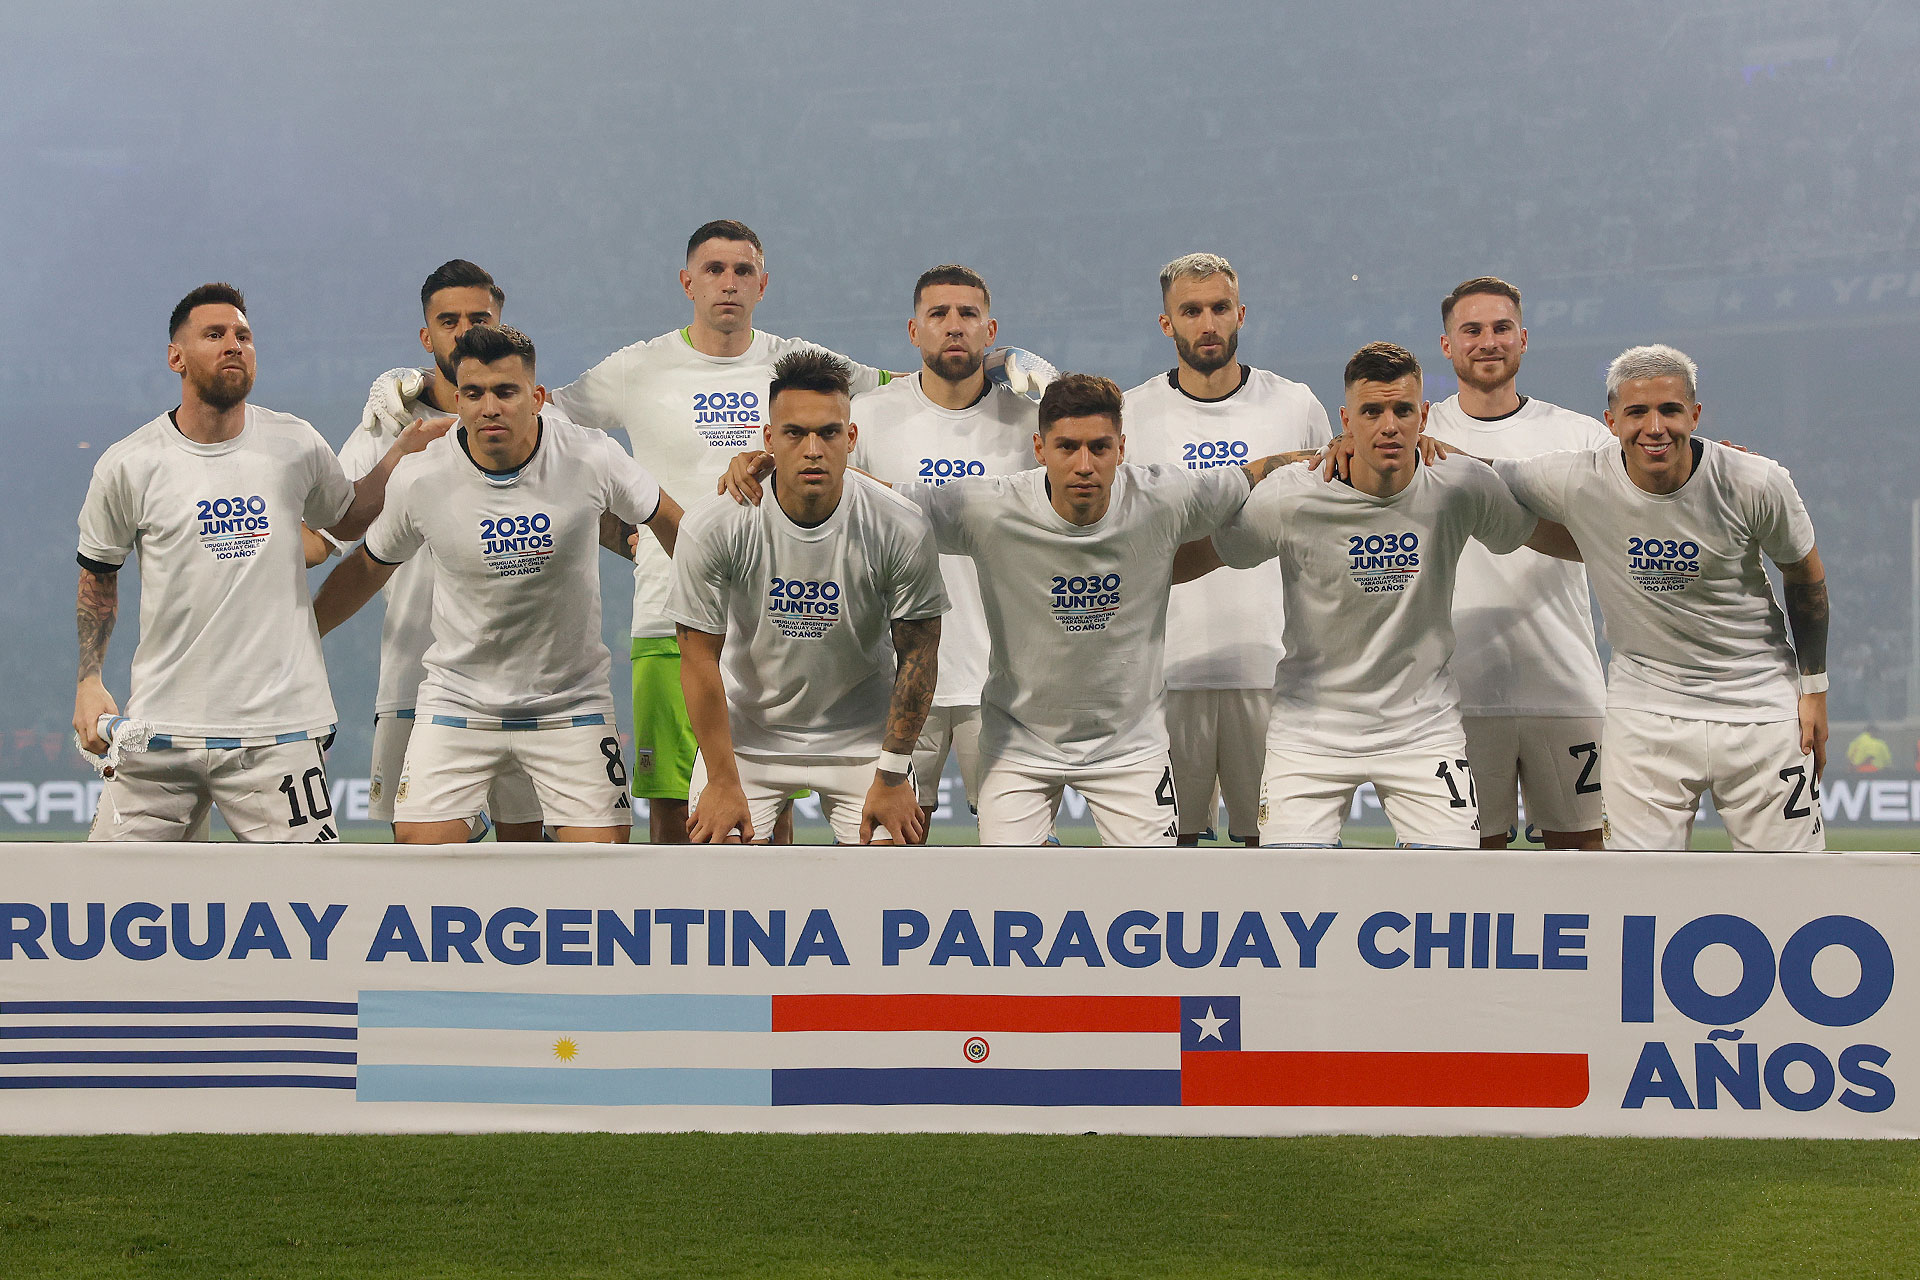 Los jugadores argentinos lucieron remeras en apoyo a la candidatura sudamericana para el Mundial 2030